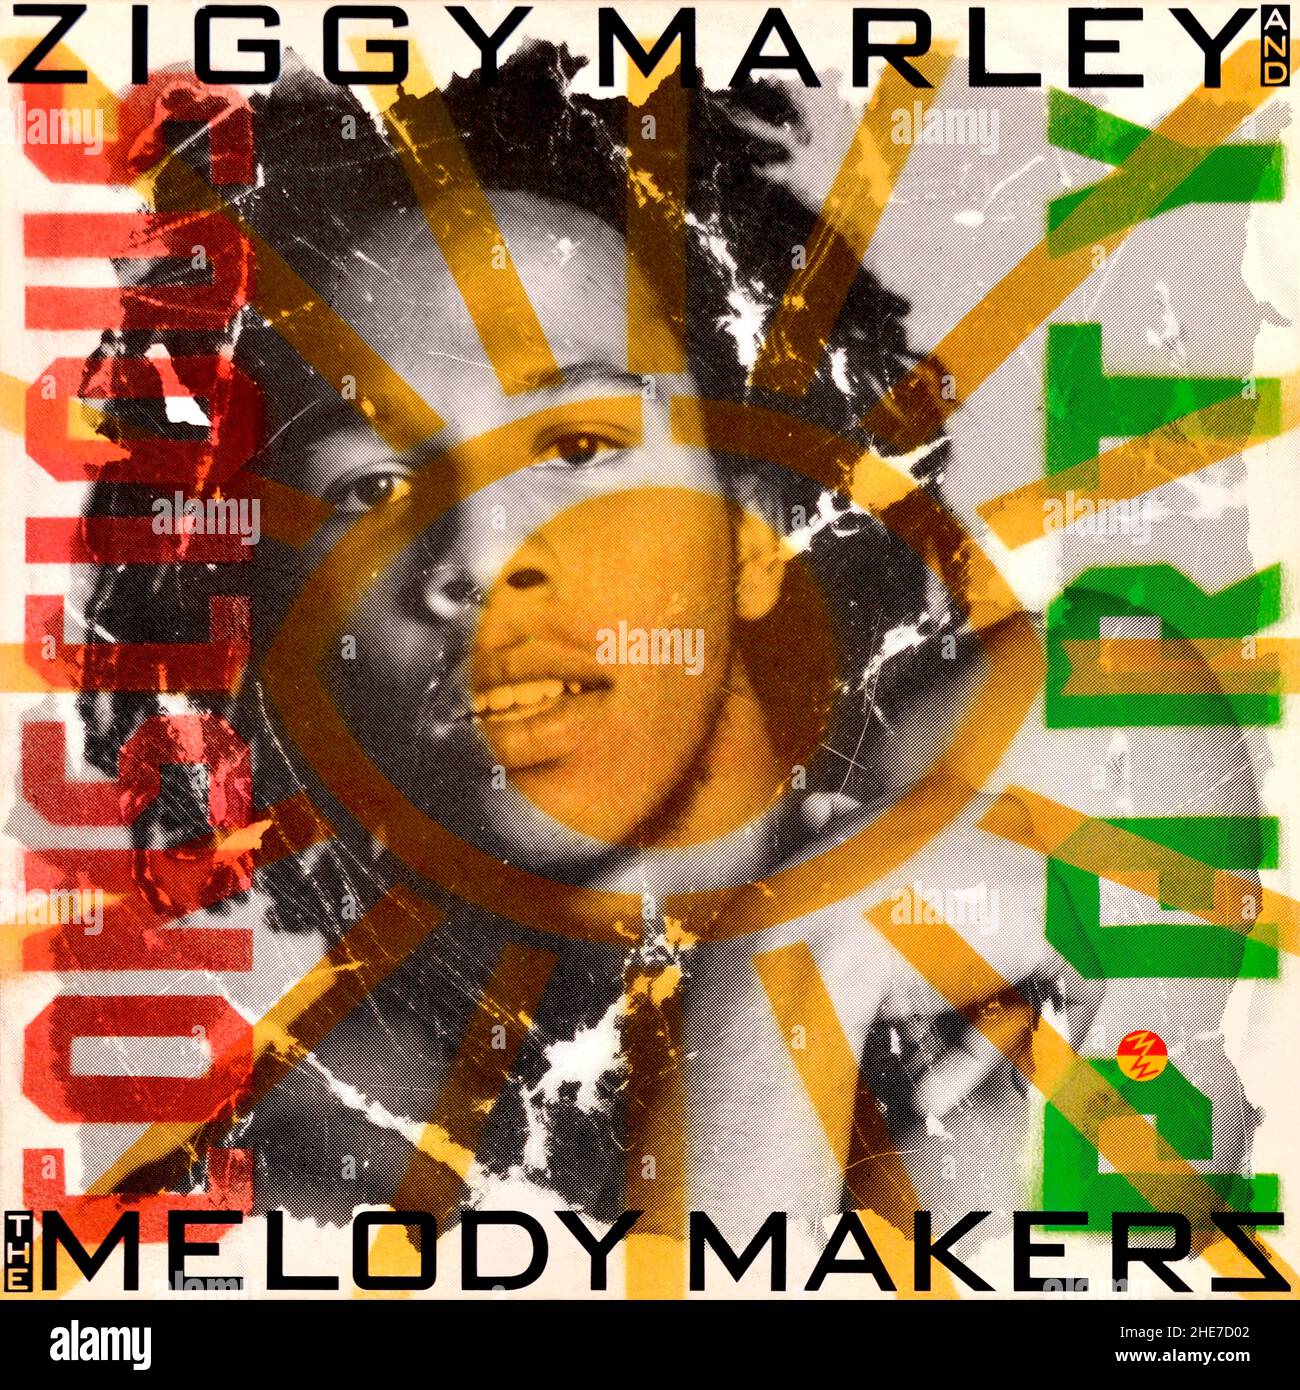 Ziggy Marley and the Melody Makers - portada original del álbum de vinilo - Consciente Party - 1988 Foto de stock